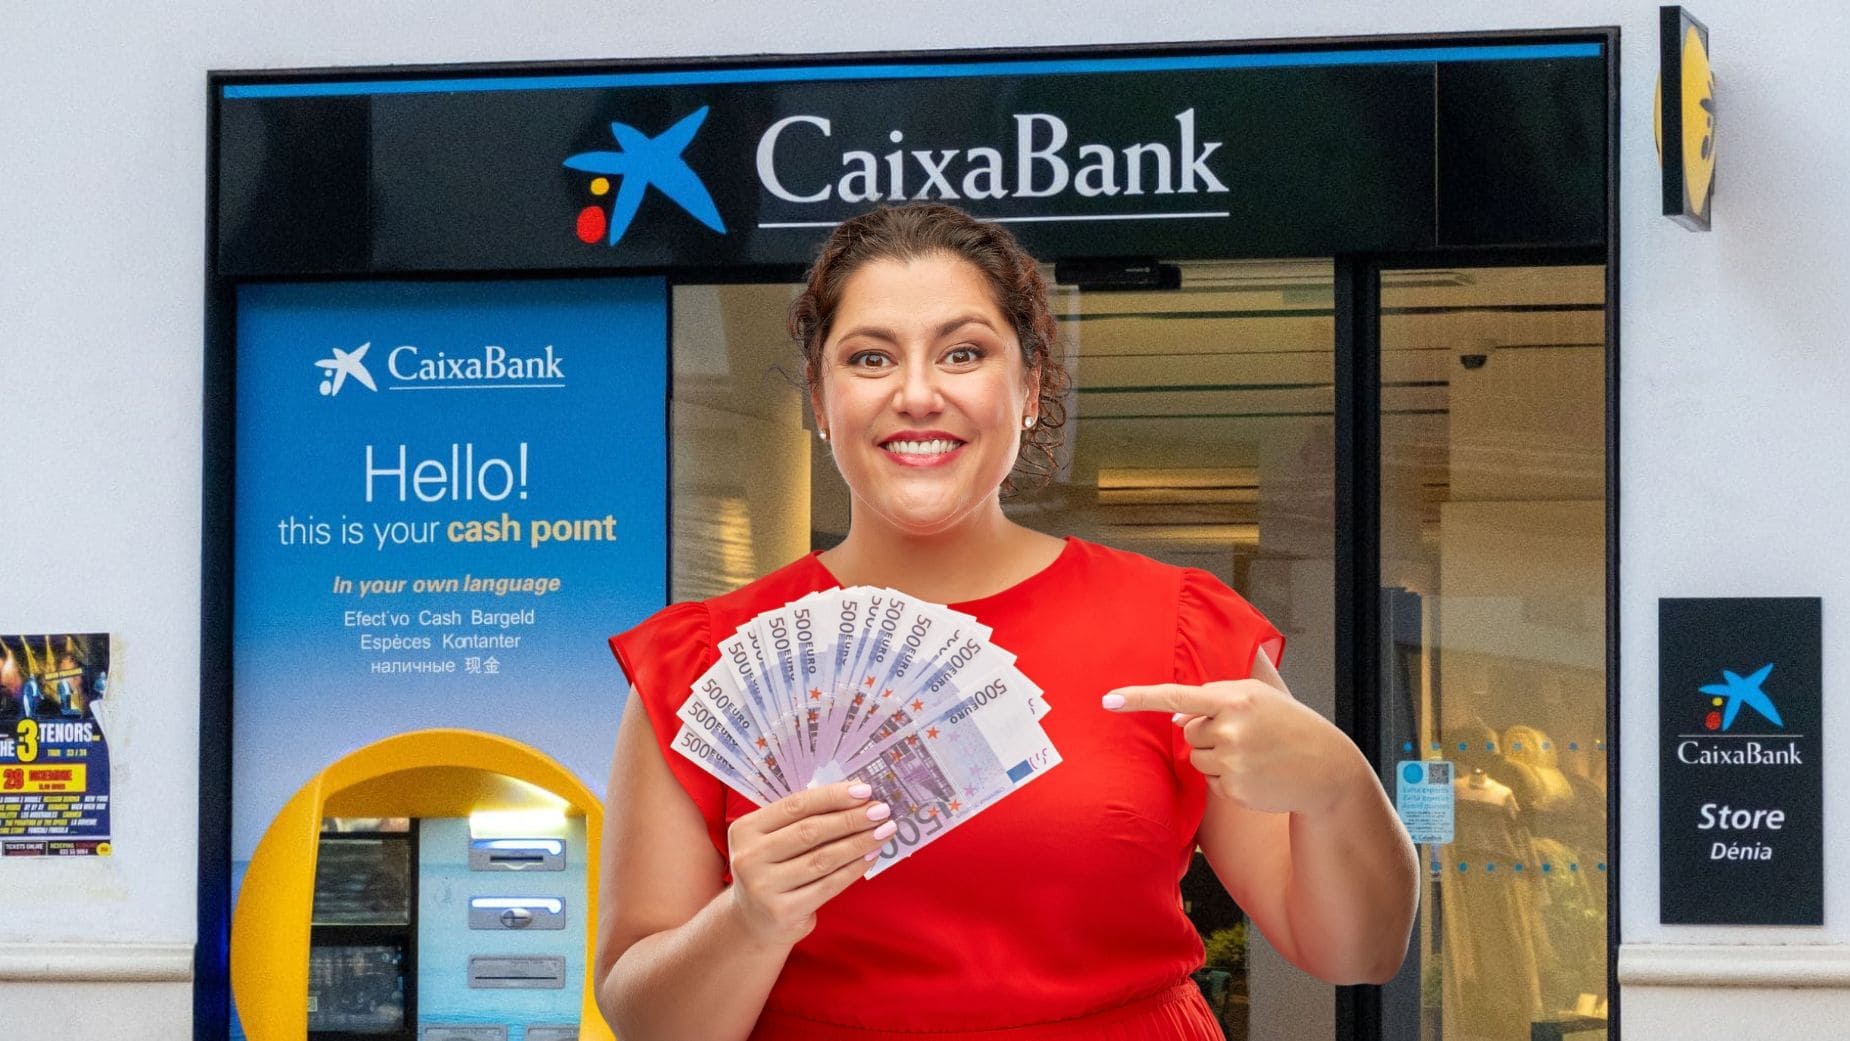 Incentivo por contratar seguro en CaixaBank